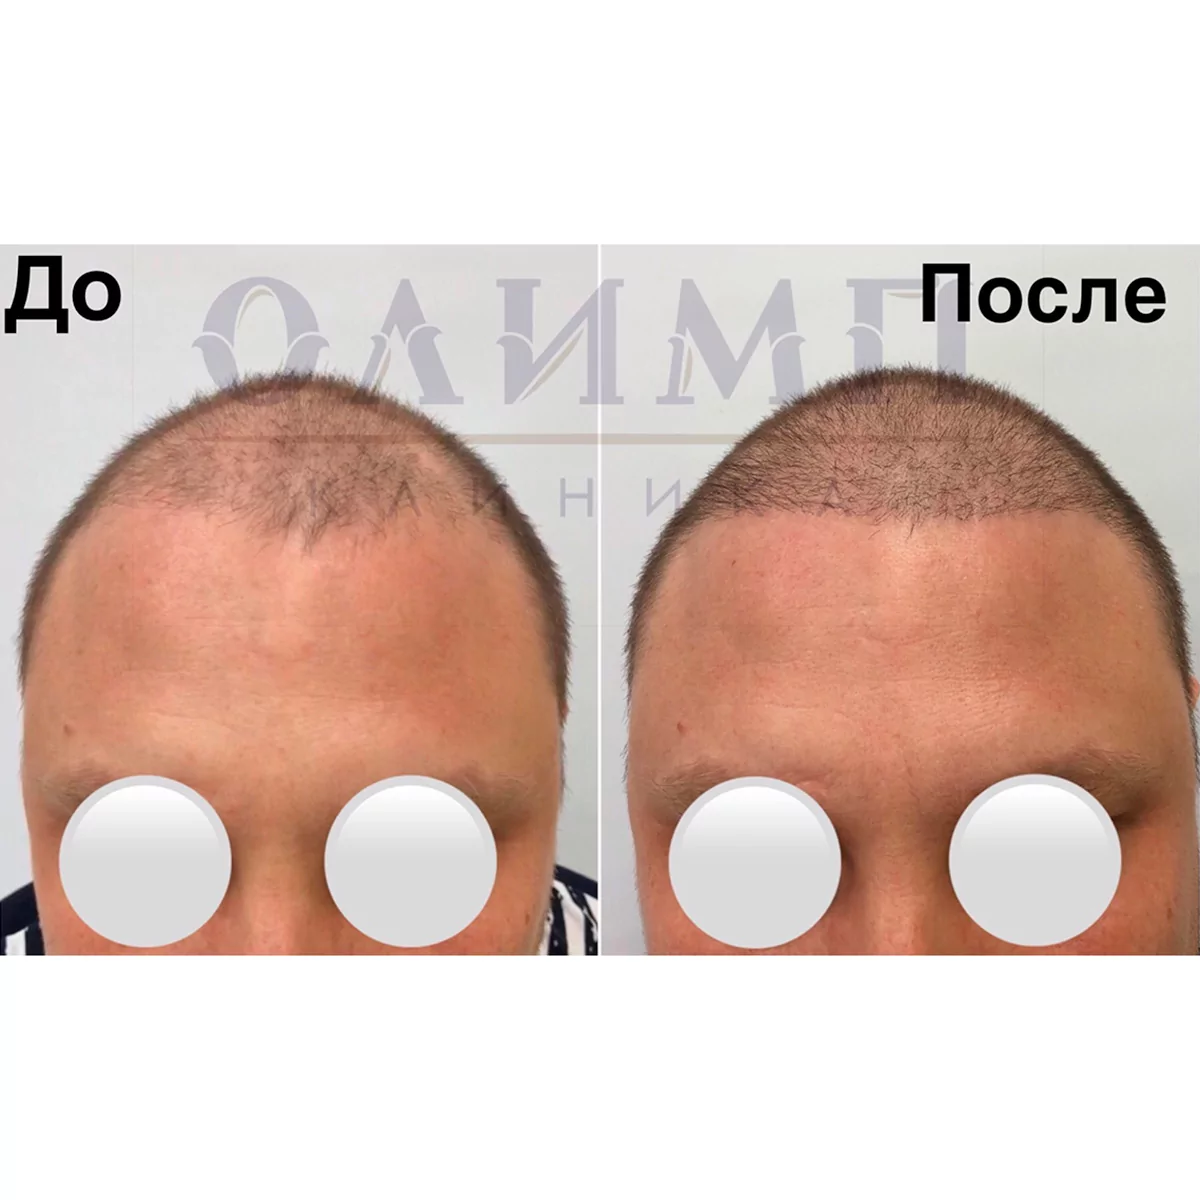 пересадка волос в Волгограде фото до и после операции